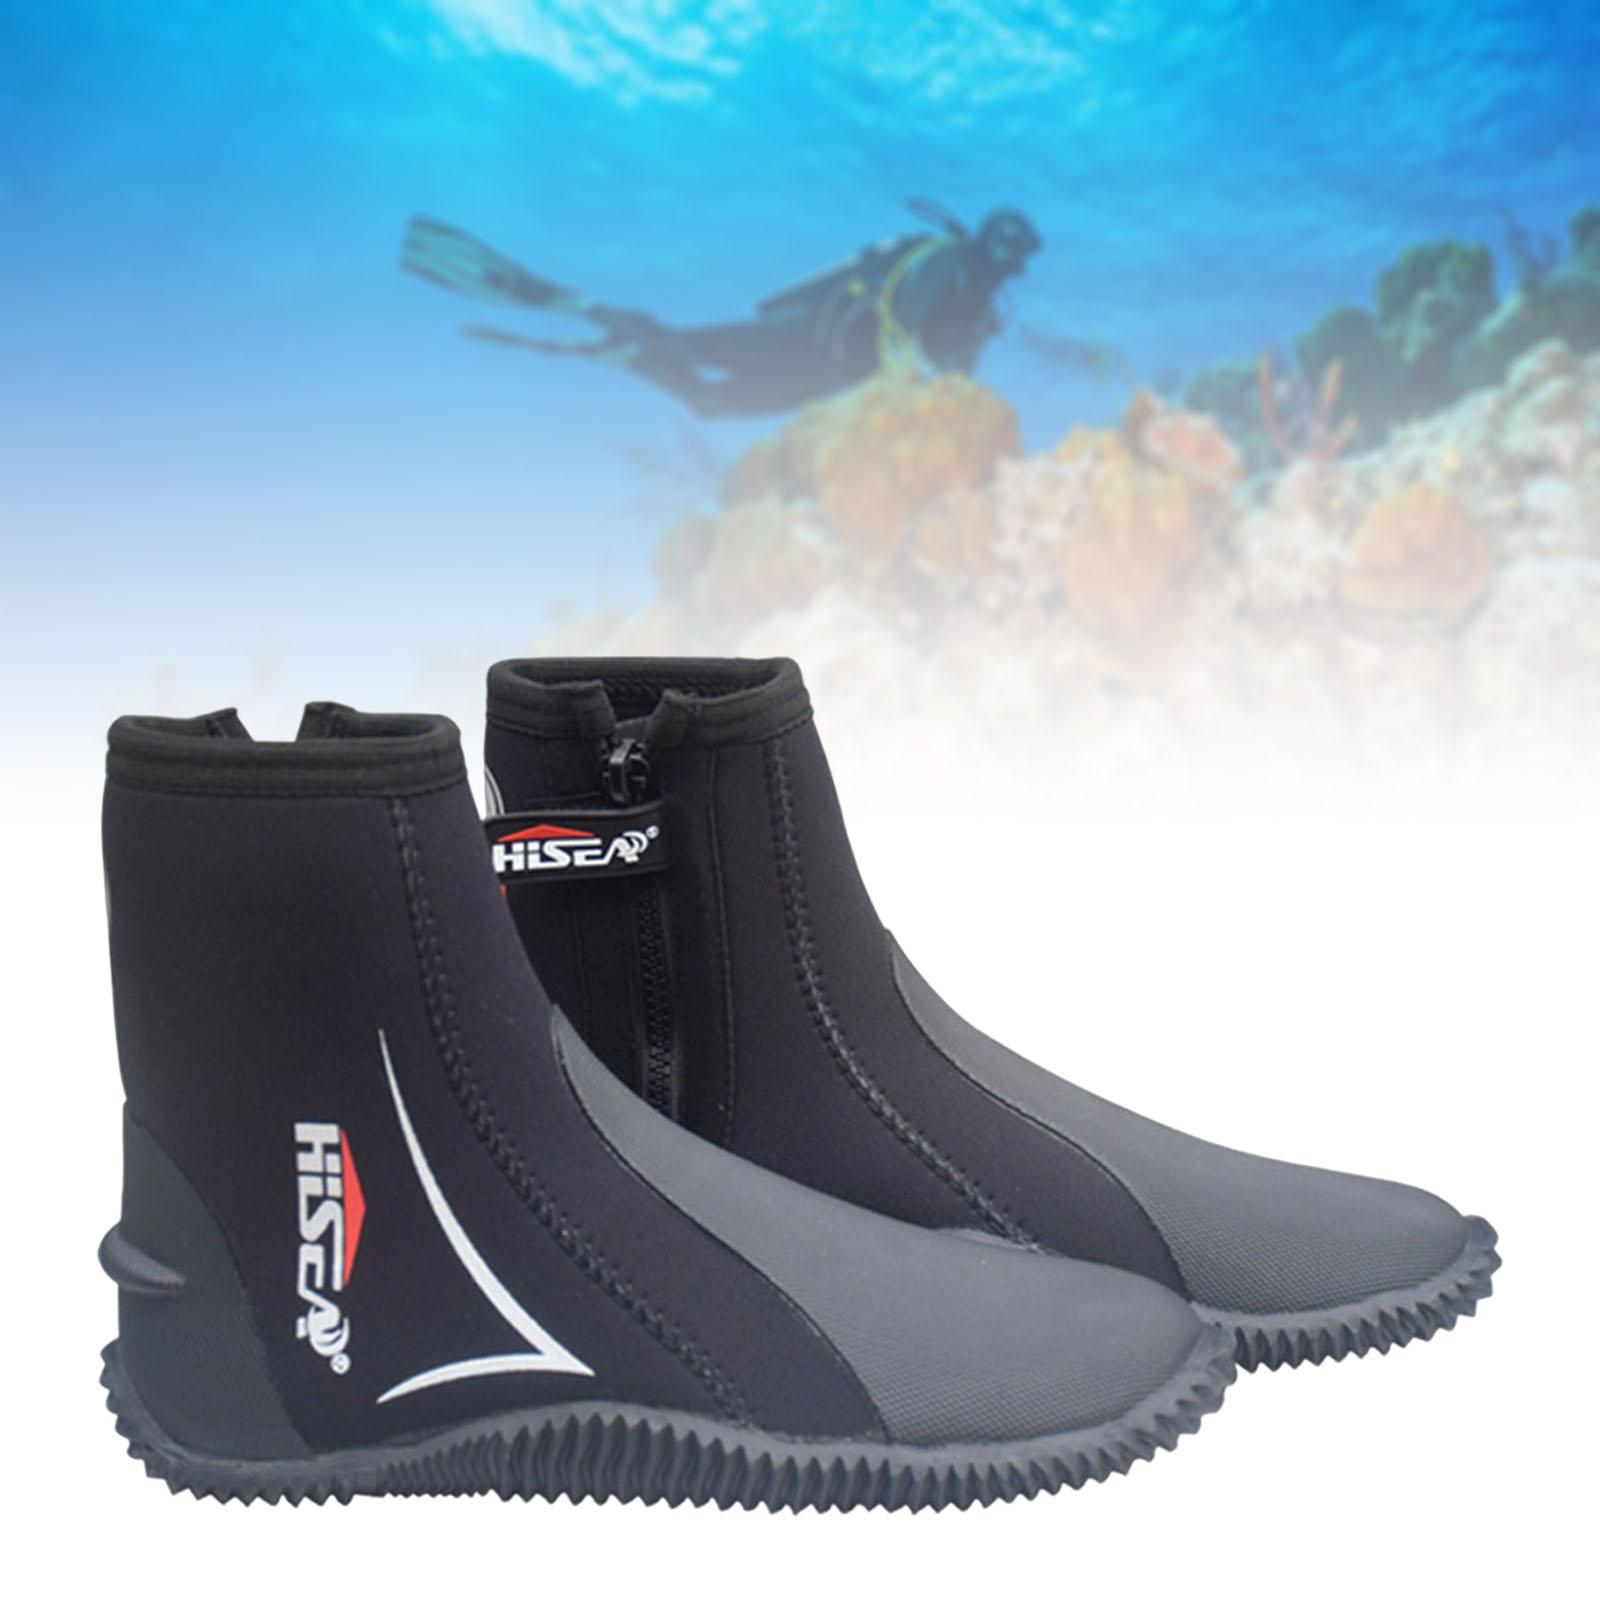 Scuba Diving Booties Neoprene Water Sports Wetsuit Boots Black 43 25.5-26 